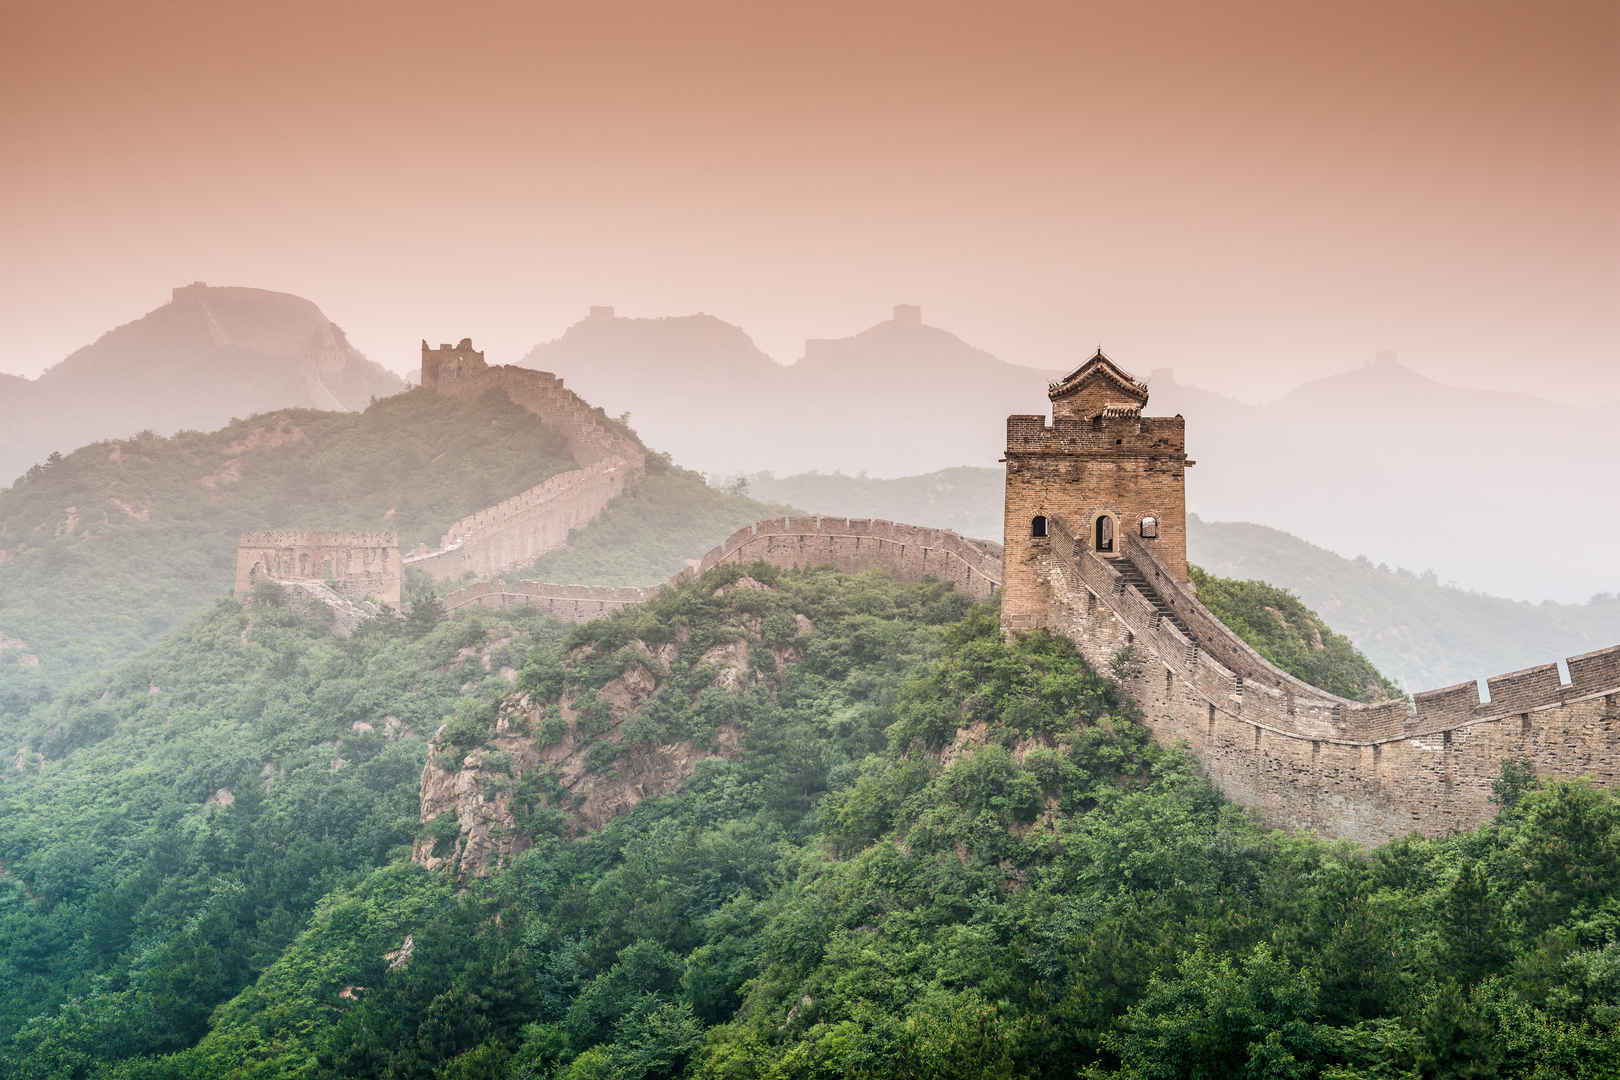 中国的长城金山岭段壁纸高清-